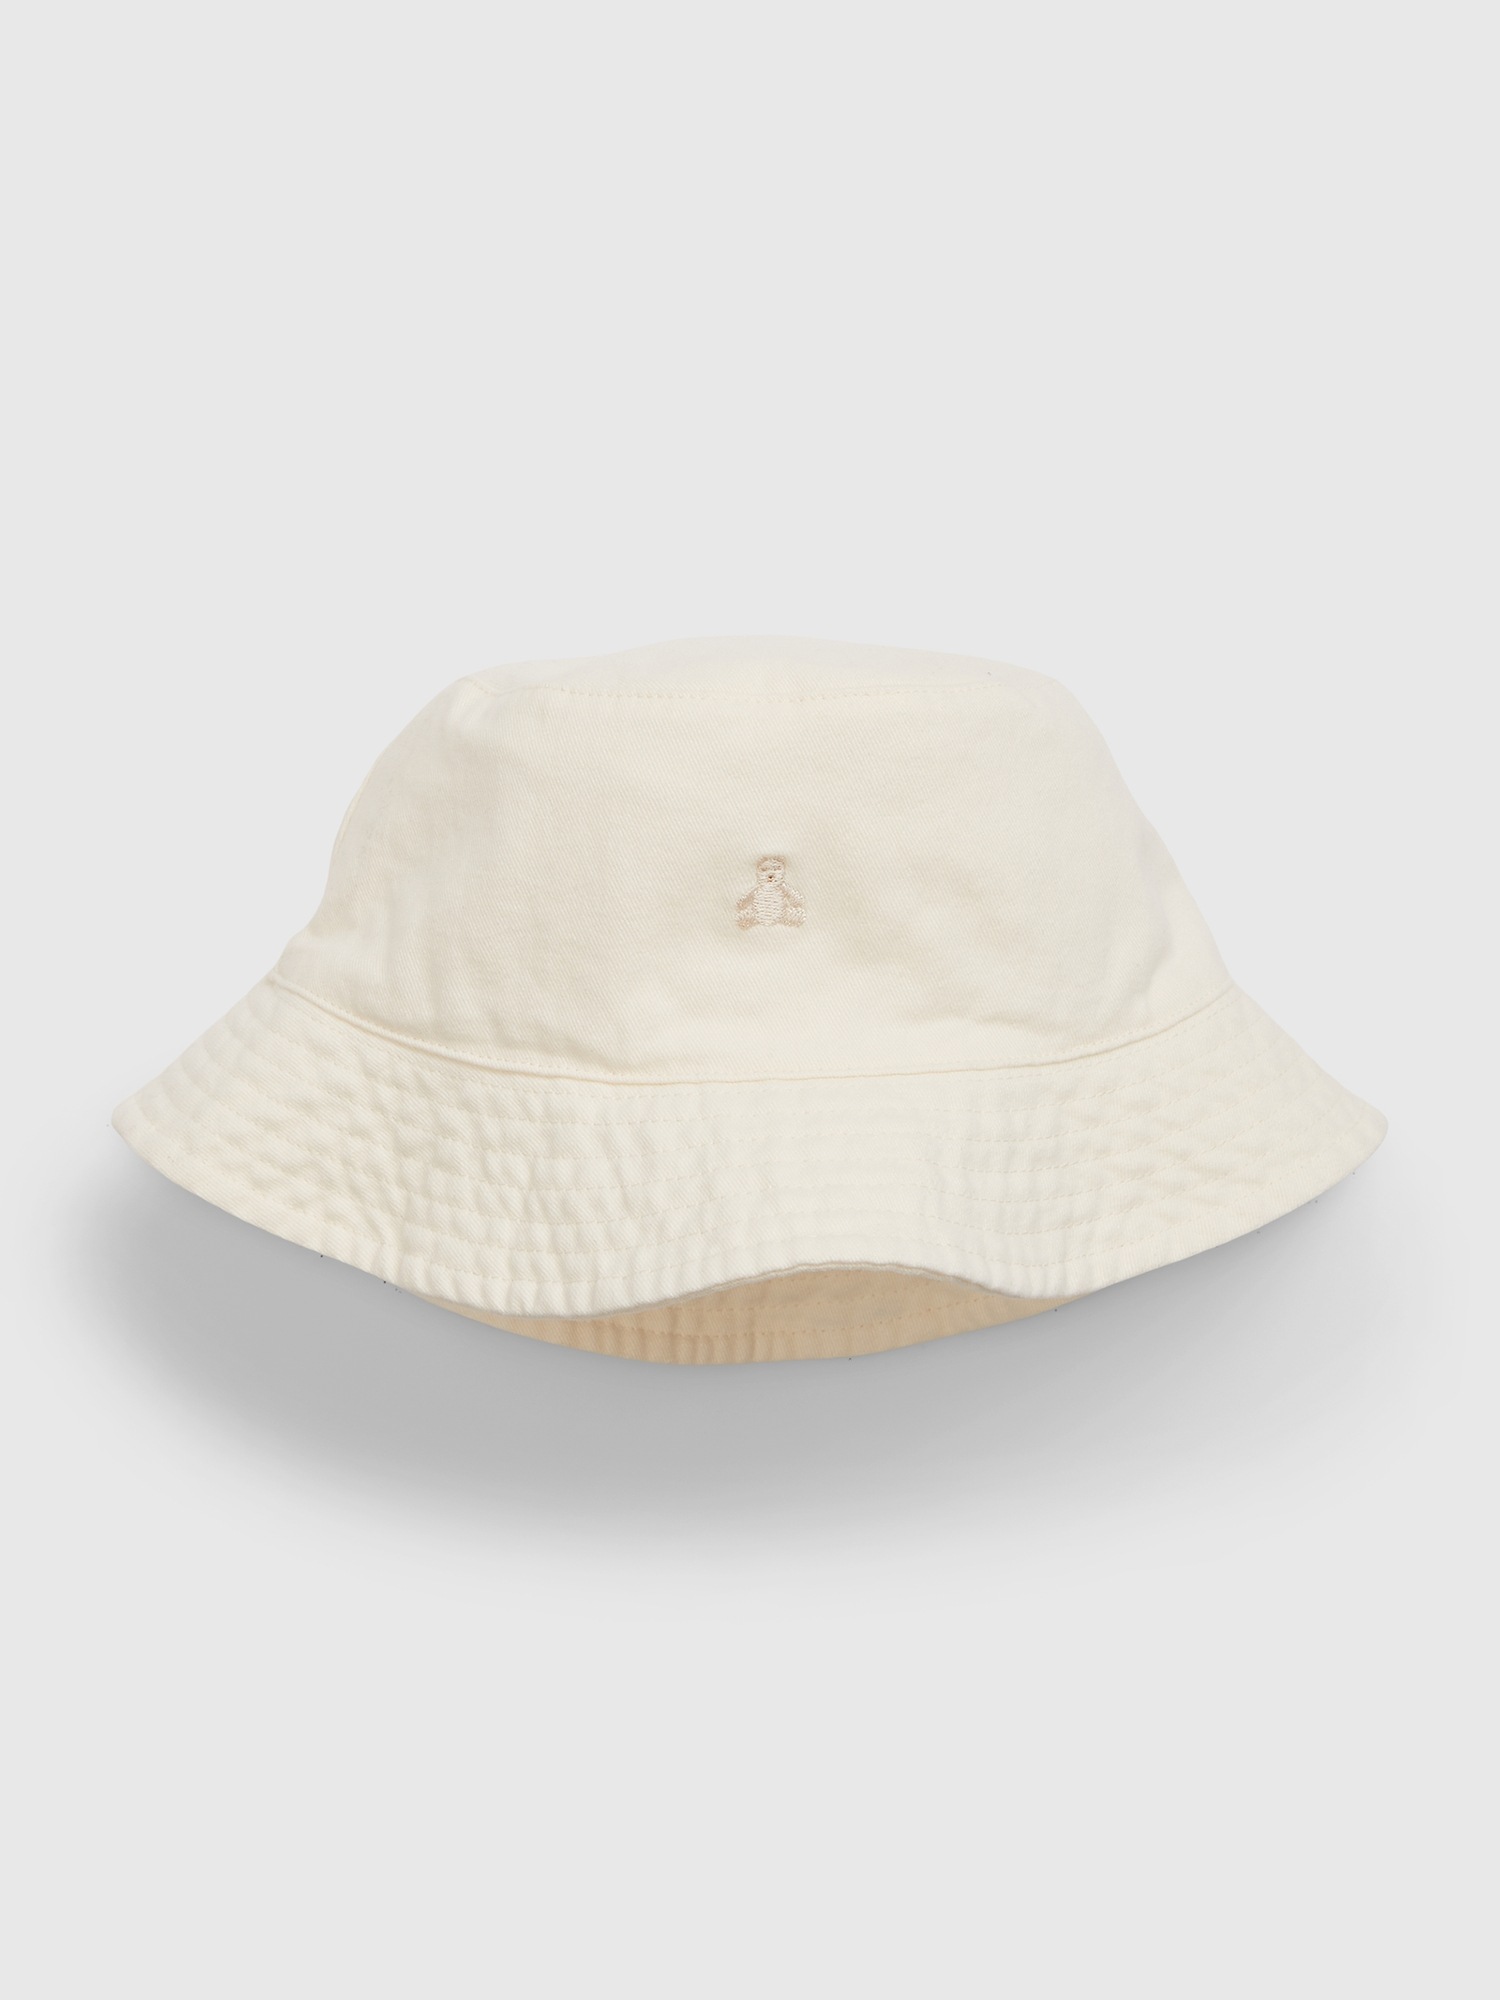 Gap Babies' Toddler 100% Organic Cotton Bucket Hat In White Sail